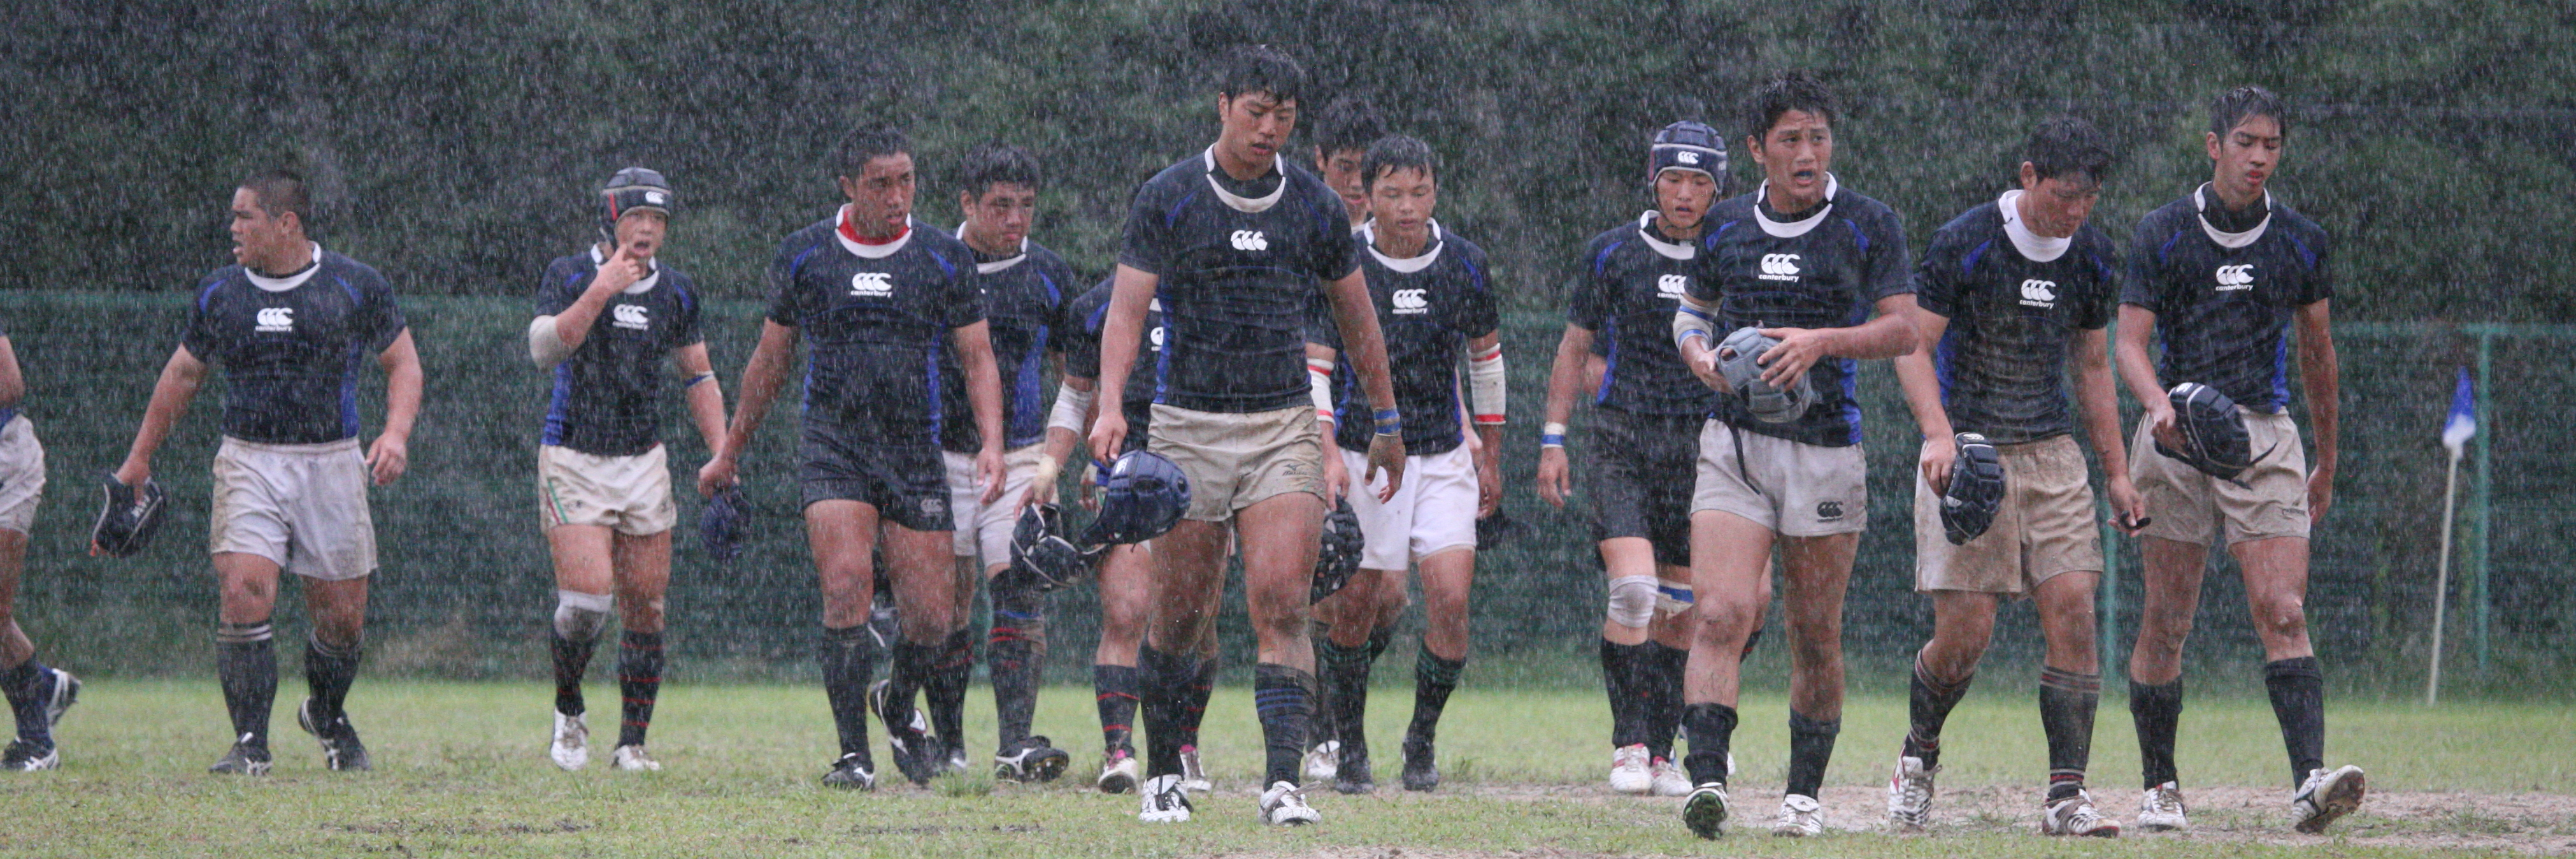 http://kokura-rugby.sakura.ne.jp/2011.8.14-A.JPG